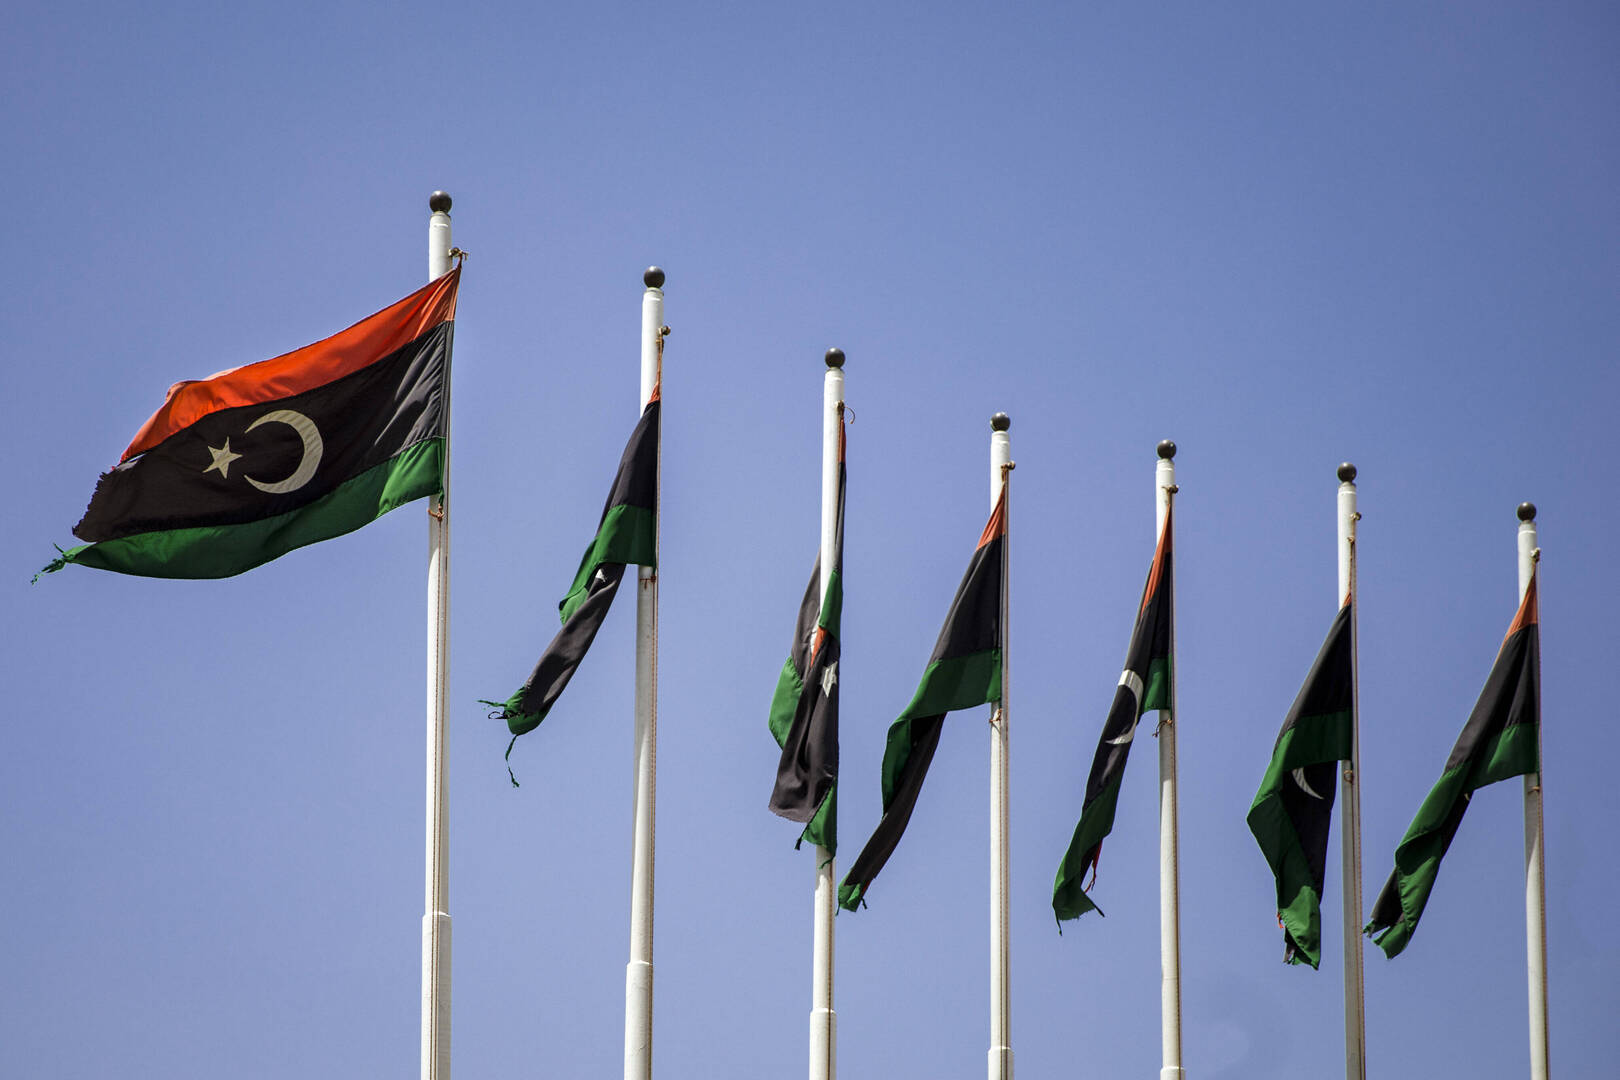 ليبيا.. إحالة بيانات 10 مرشحين للرئاسة إلى النائب العام والمباحث الجنائية والجوازات